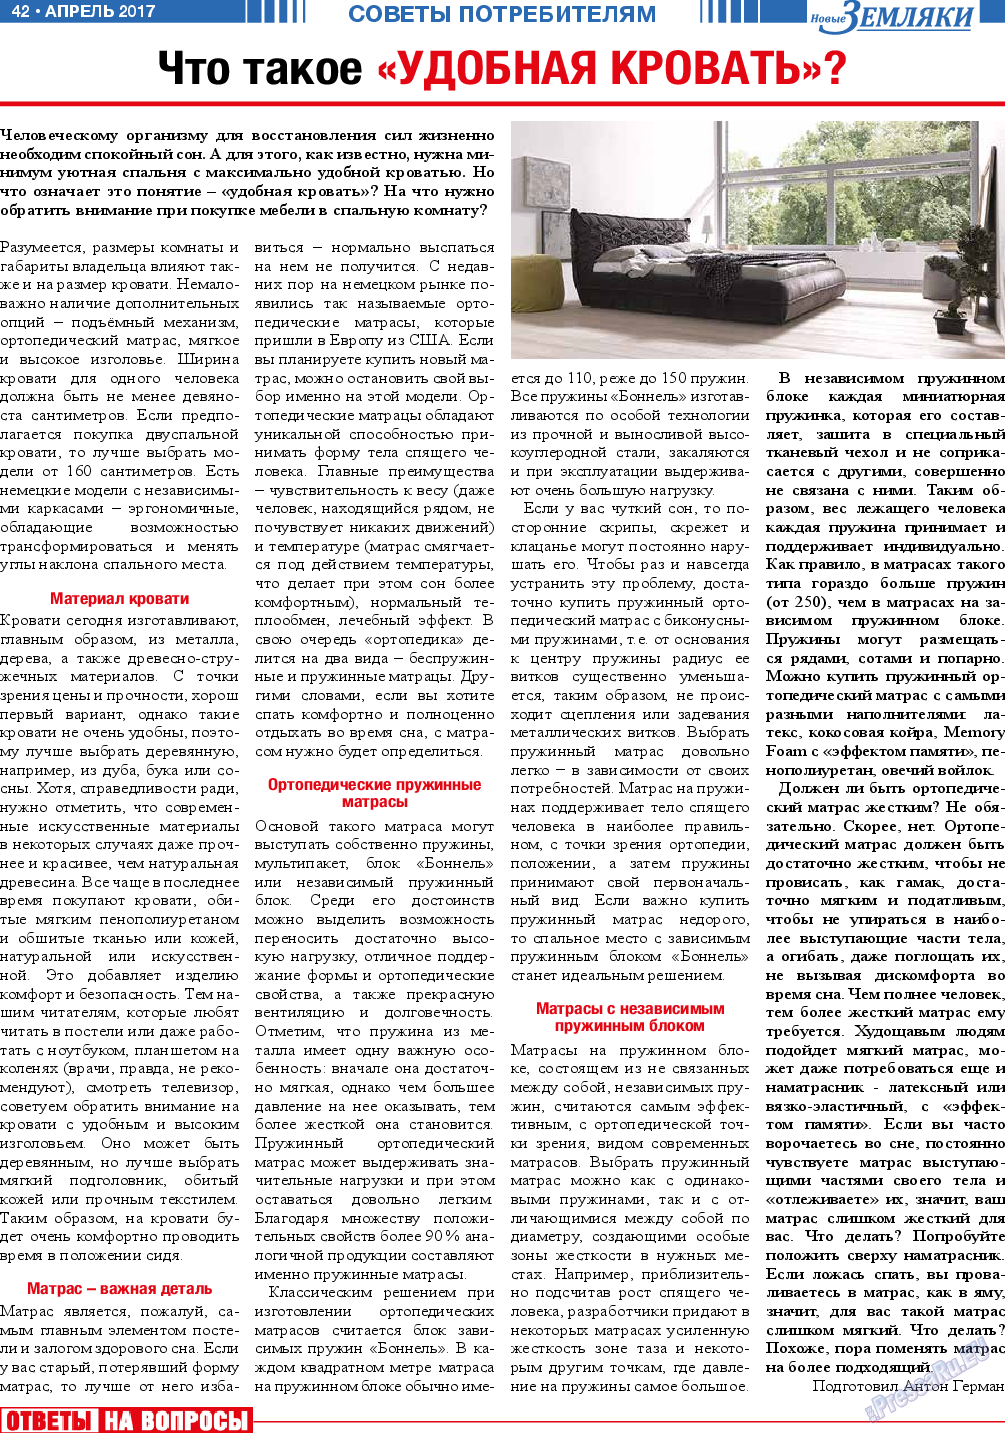 Новые Земляки, газета. 2017 №4 стр.42